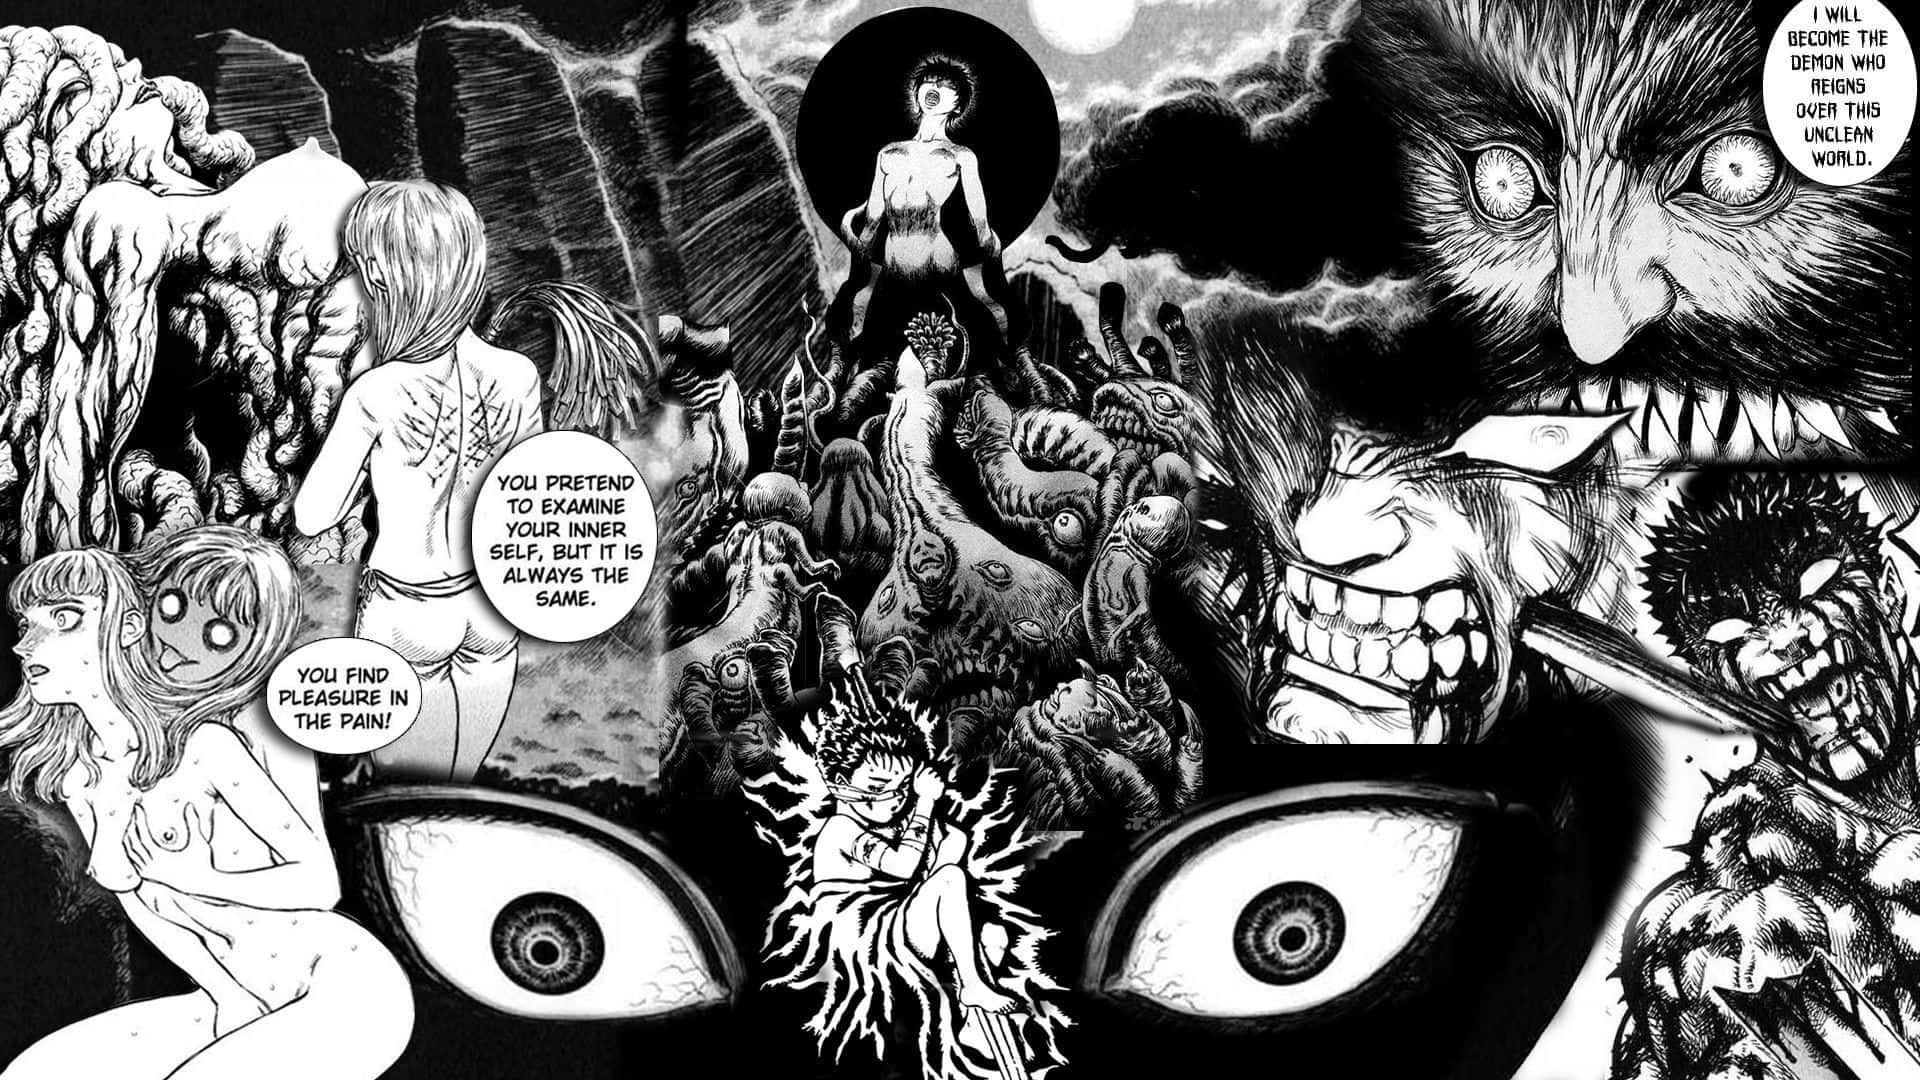 Tauchensie Ein In Die Welt Von Manga Mit Diesem Lebendigen Und Bunten Manga-panel!